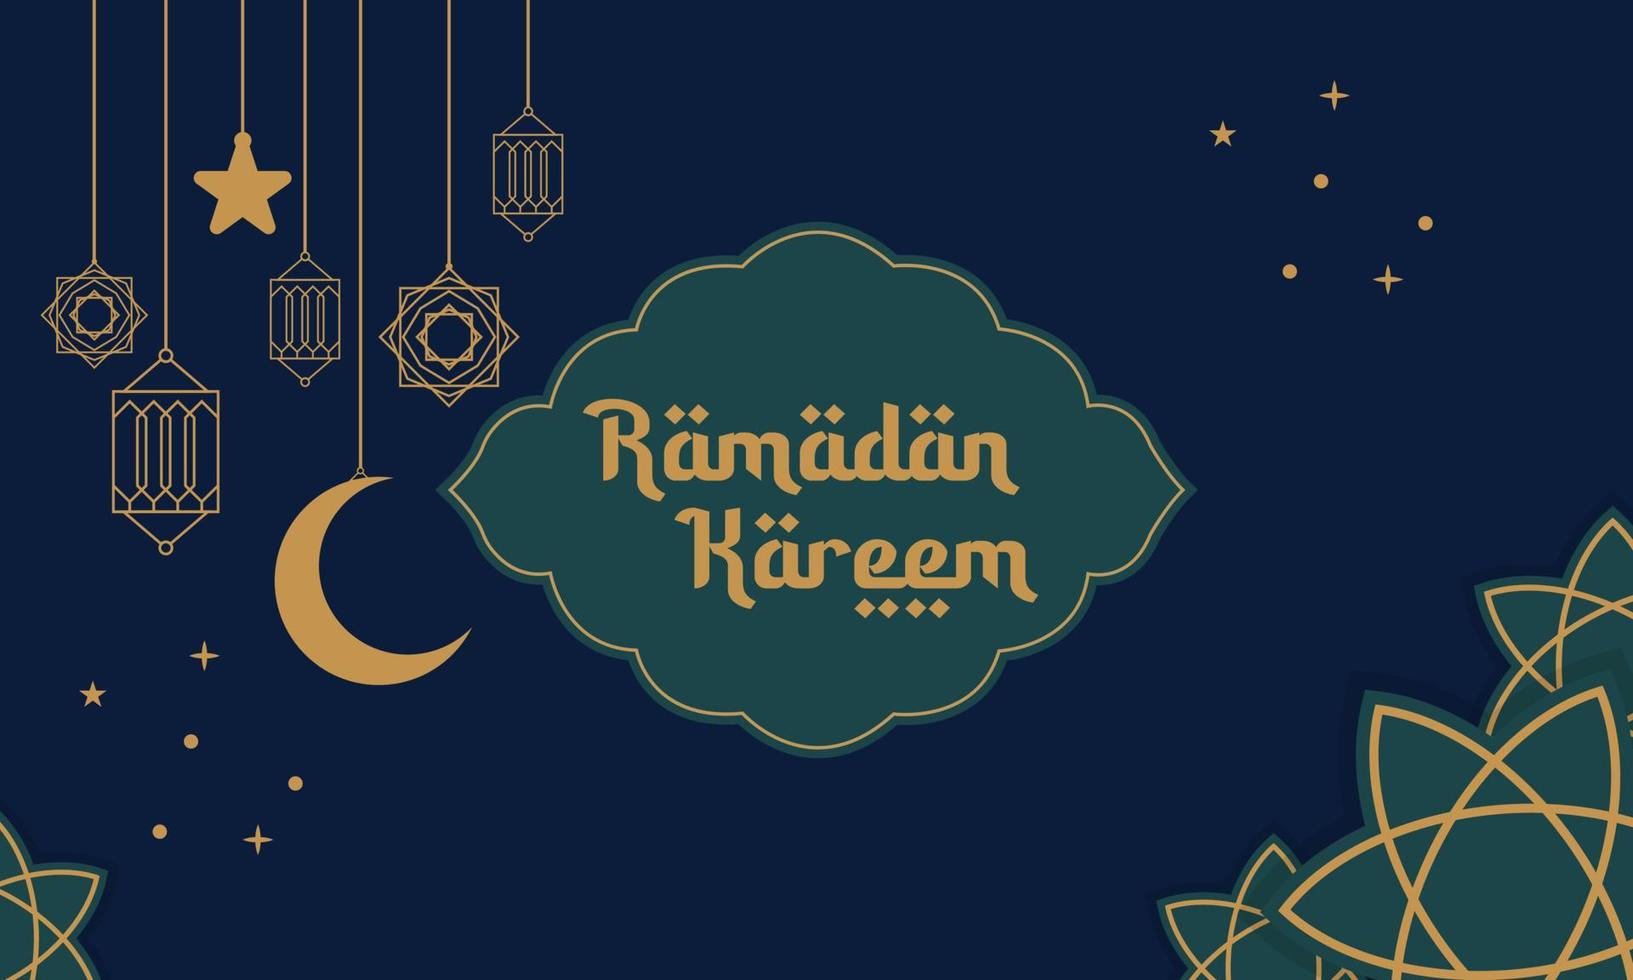 karim ramadan. avec la calligraphie arabe et la parure, il s'agit d'un motif de fond islamique. vecteur